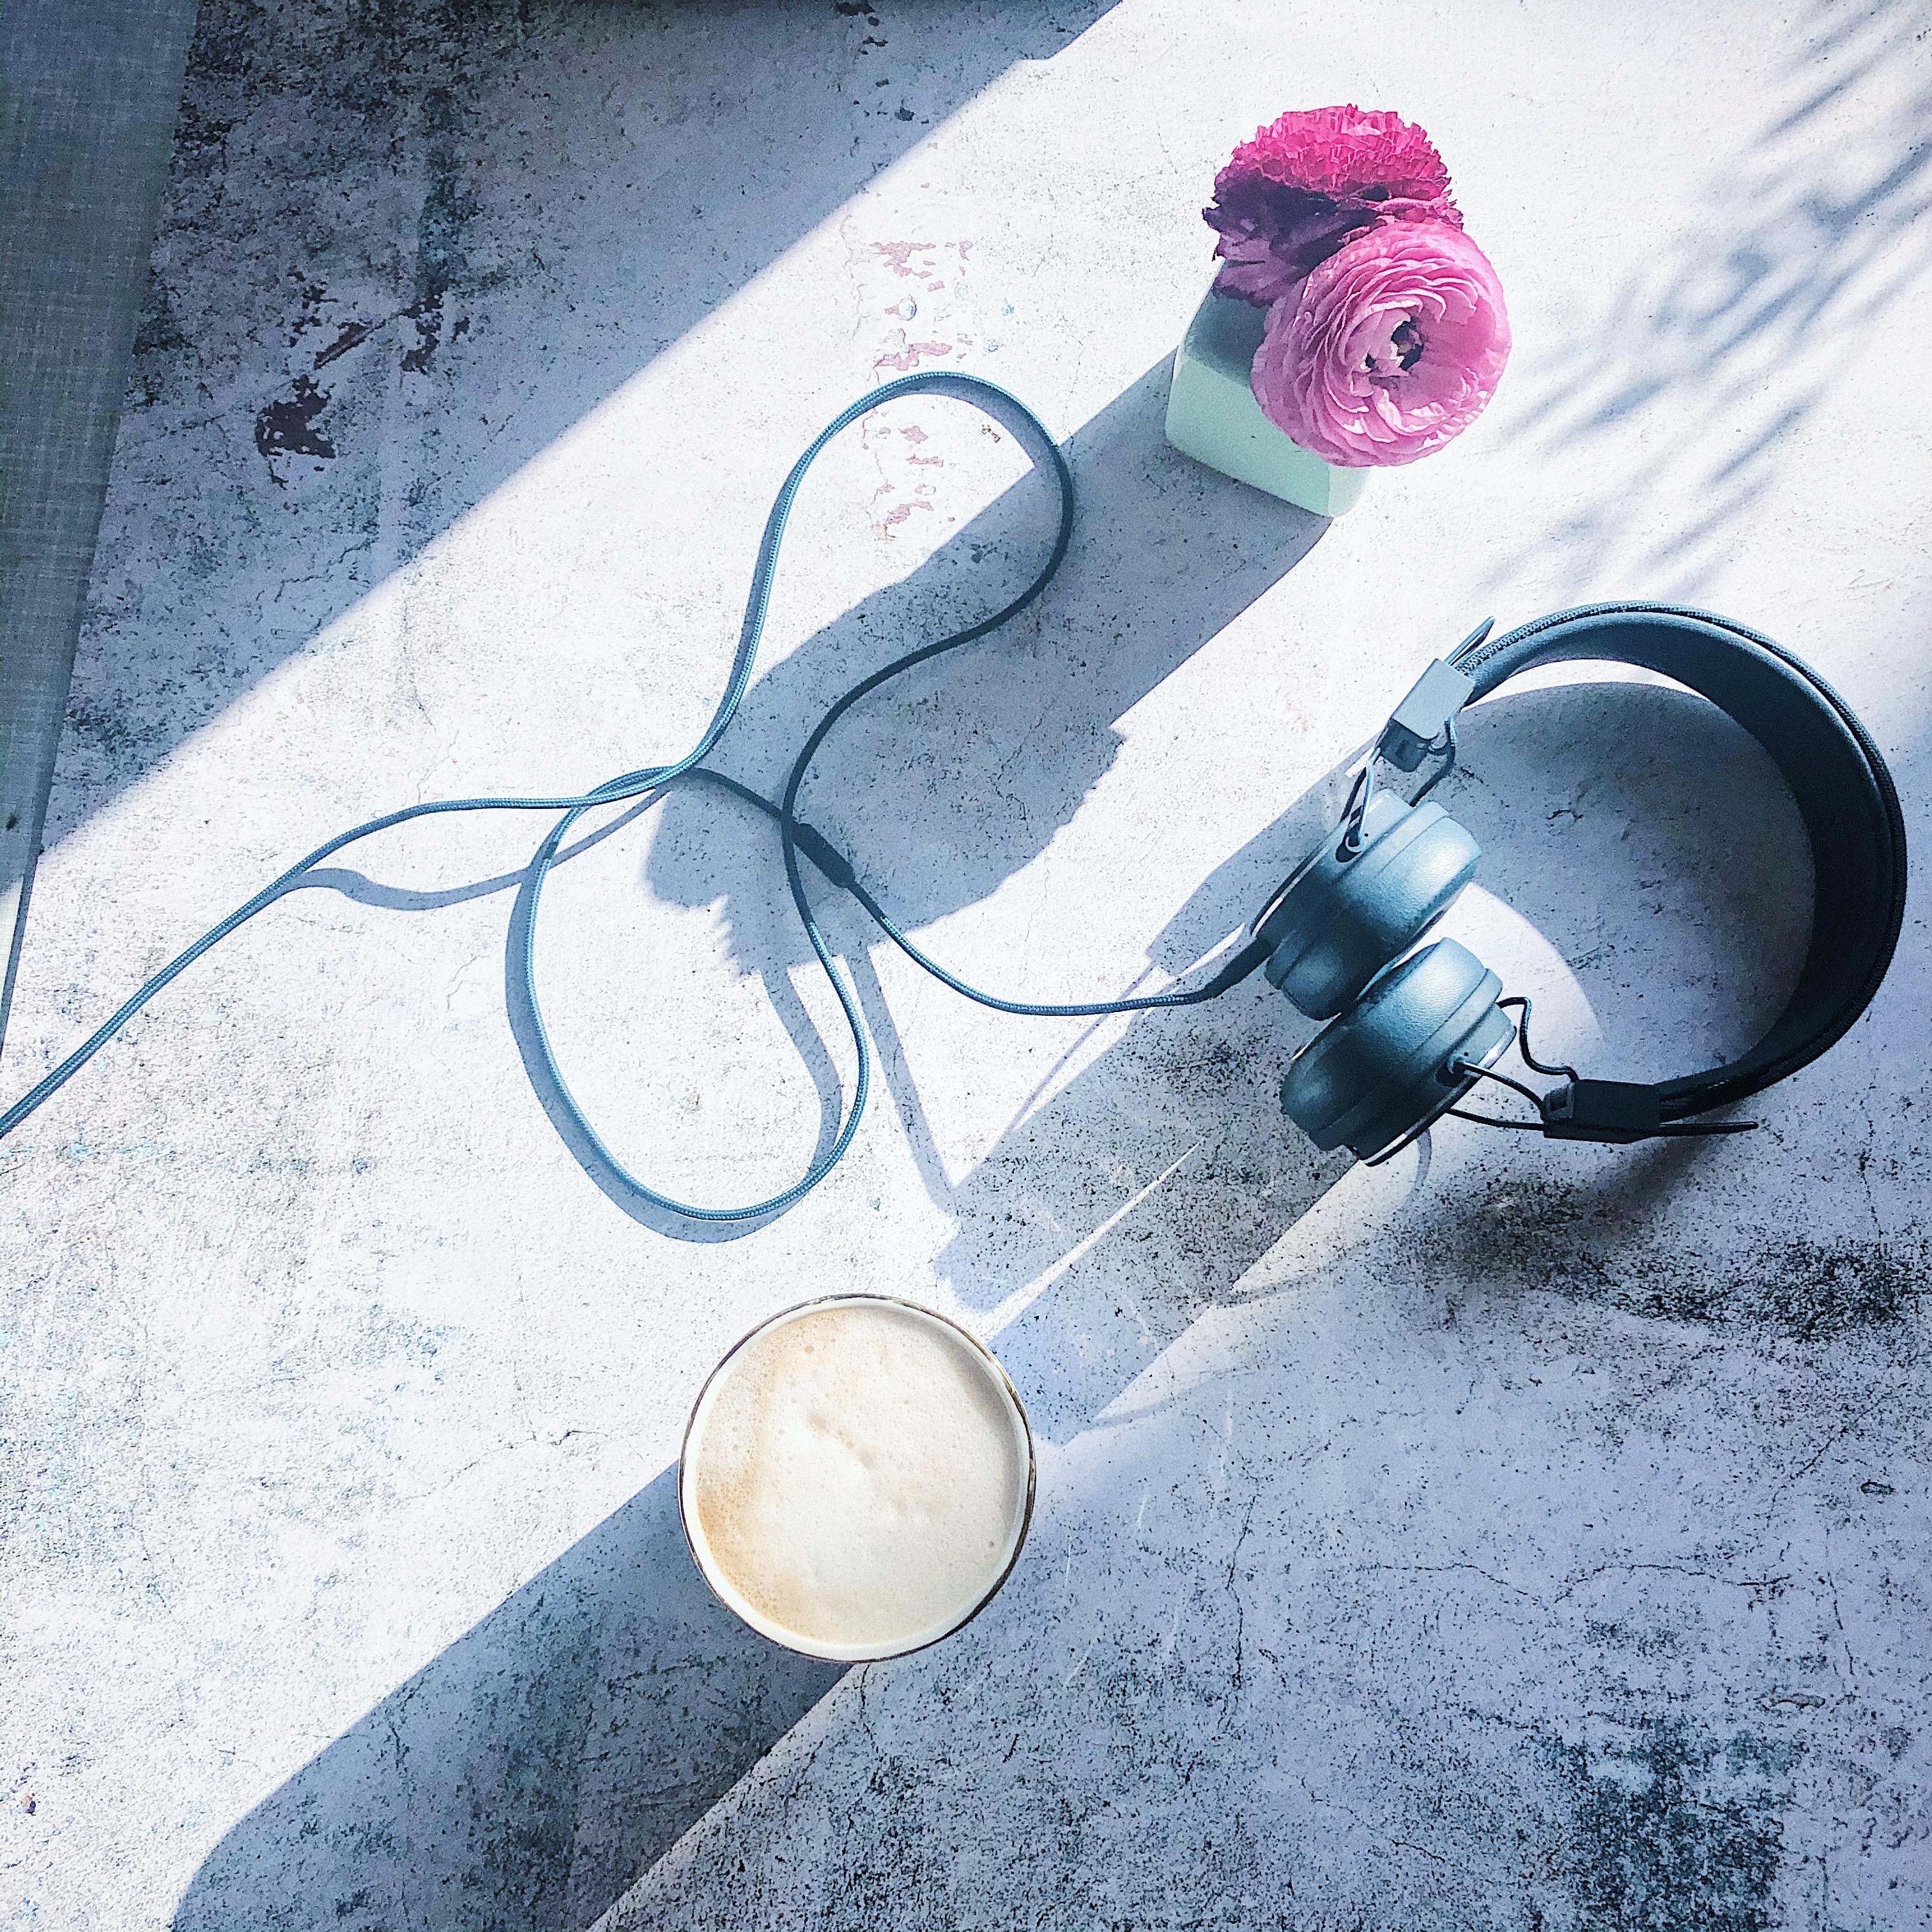 Ein bisschen Sonnenlicht von letzter Woche fürs Gemüt... ✨
#flatlay #Blumen #Kaffee #Marmor